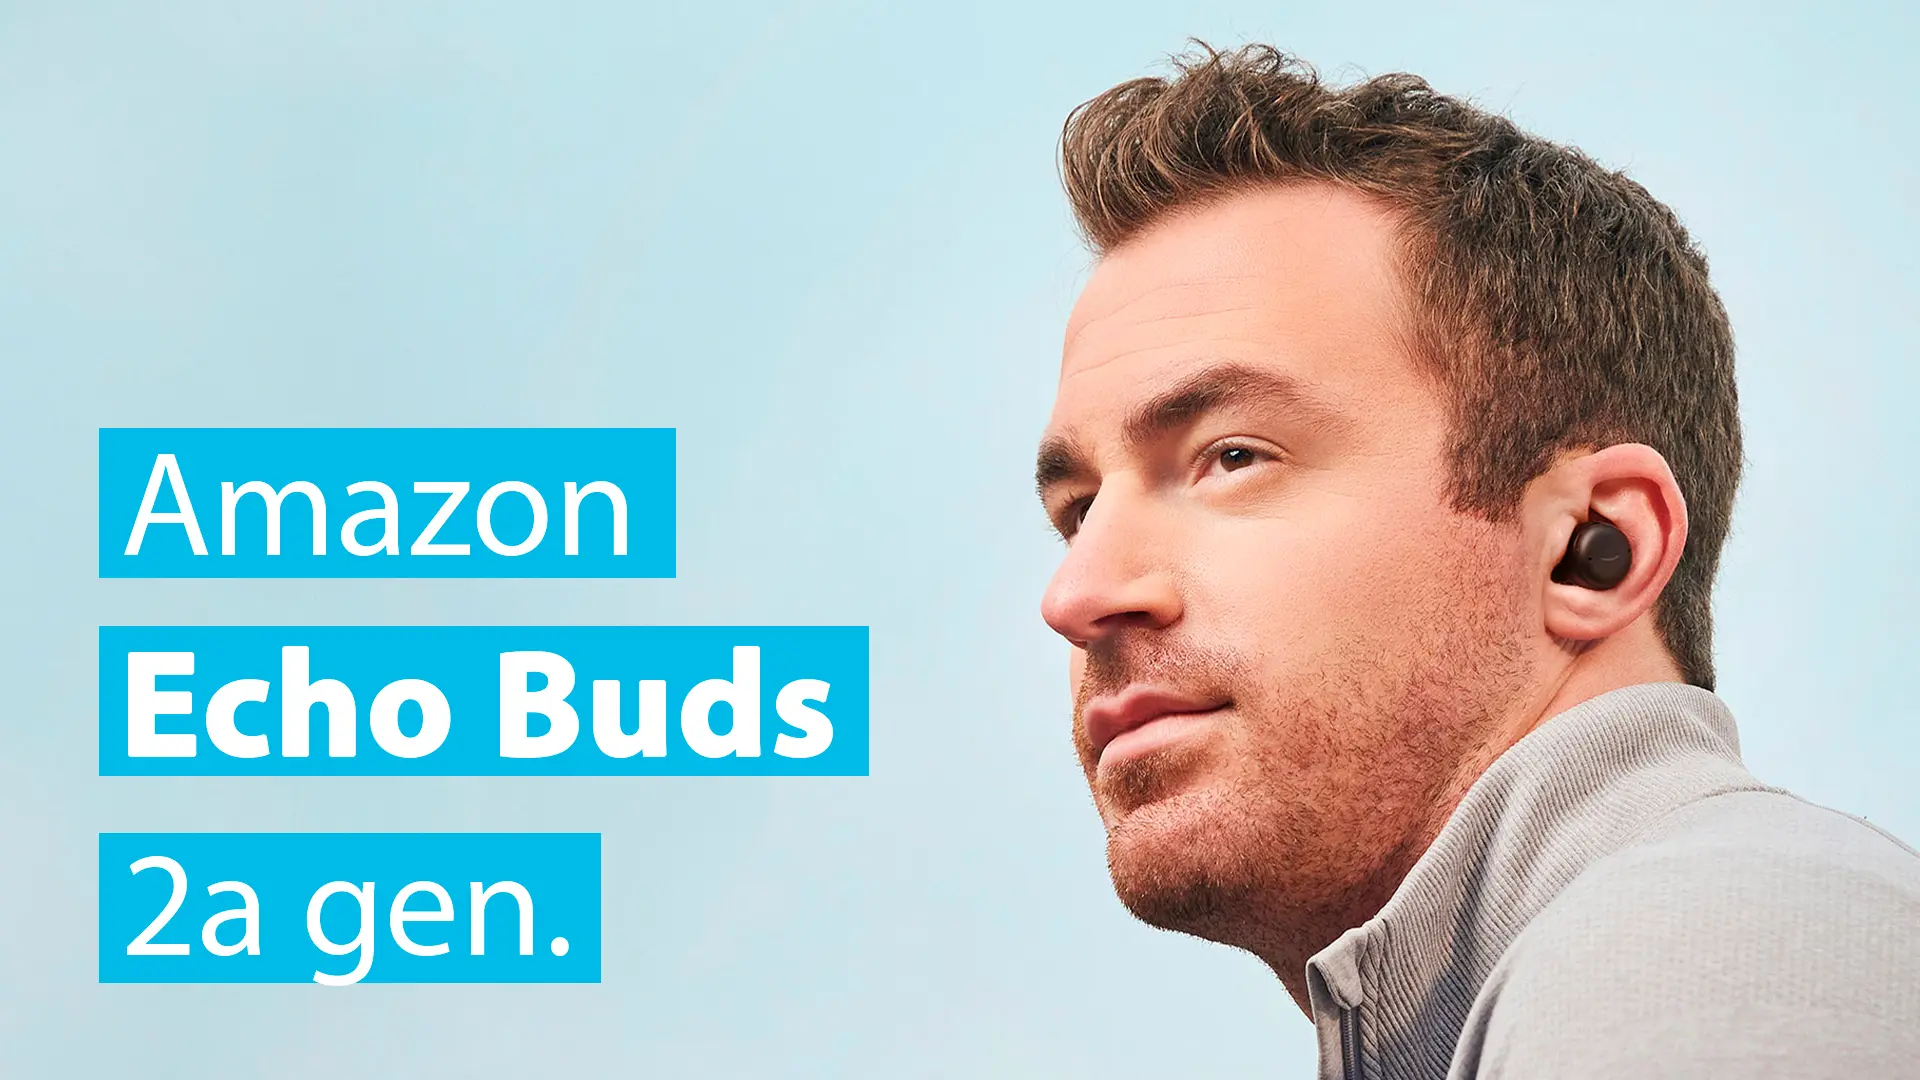 Amazon Echo Buds (2ª Gen): Audio Inalámbrico y Alexa Integrada